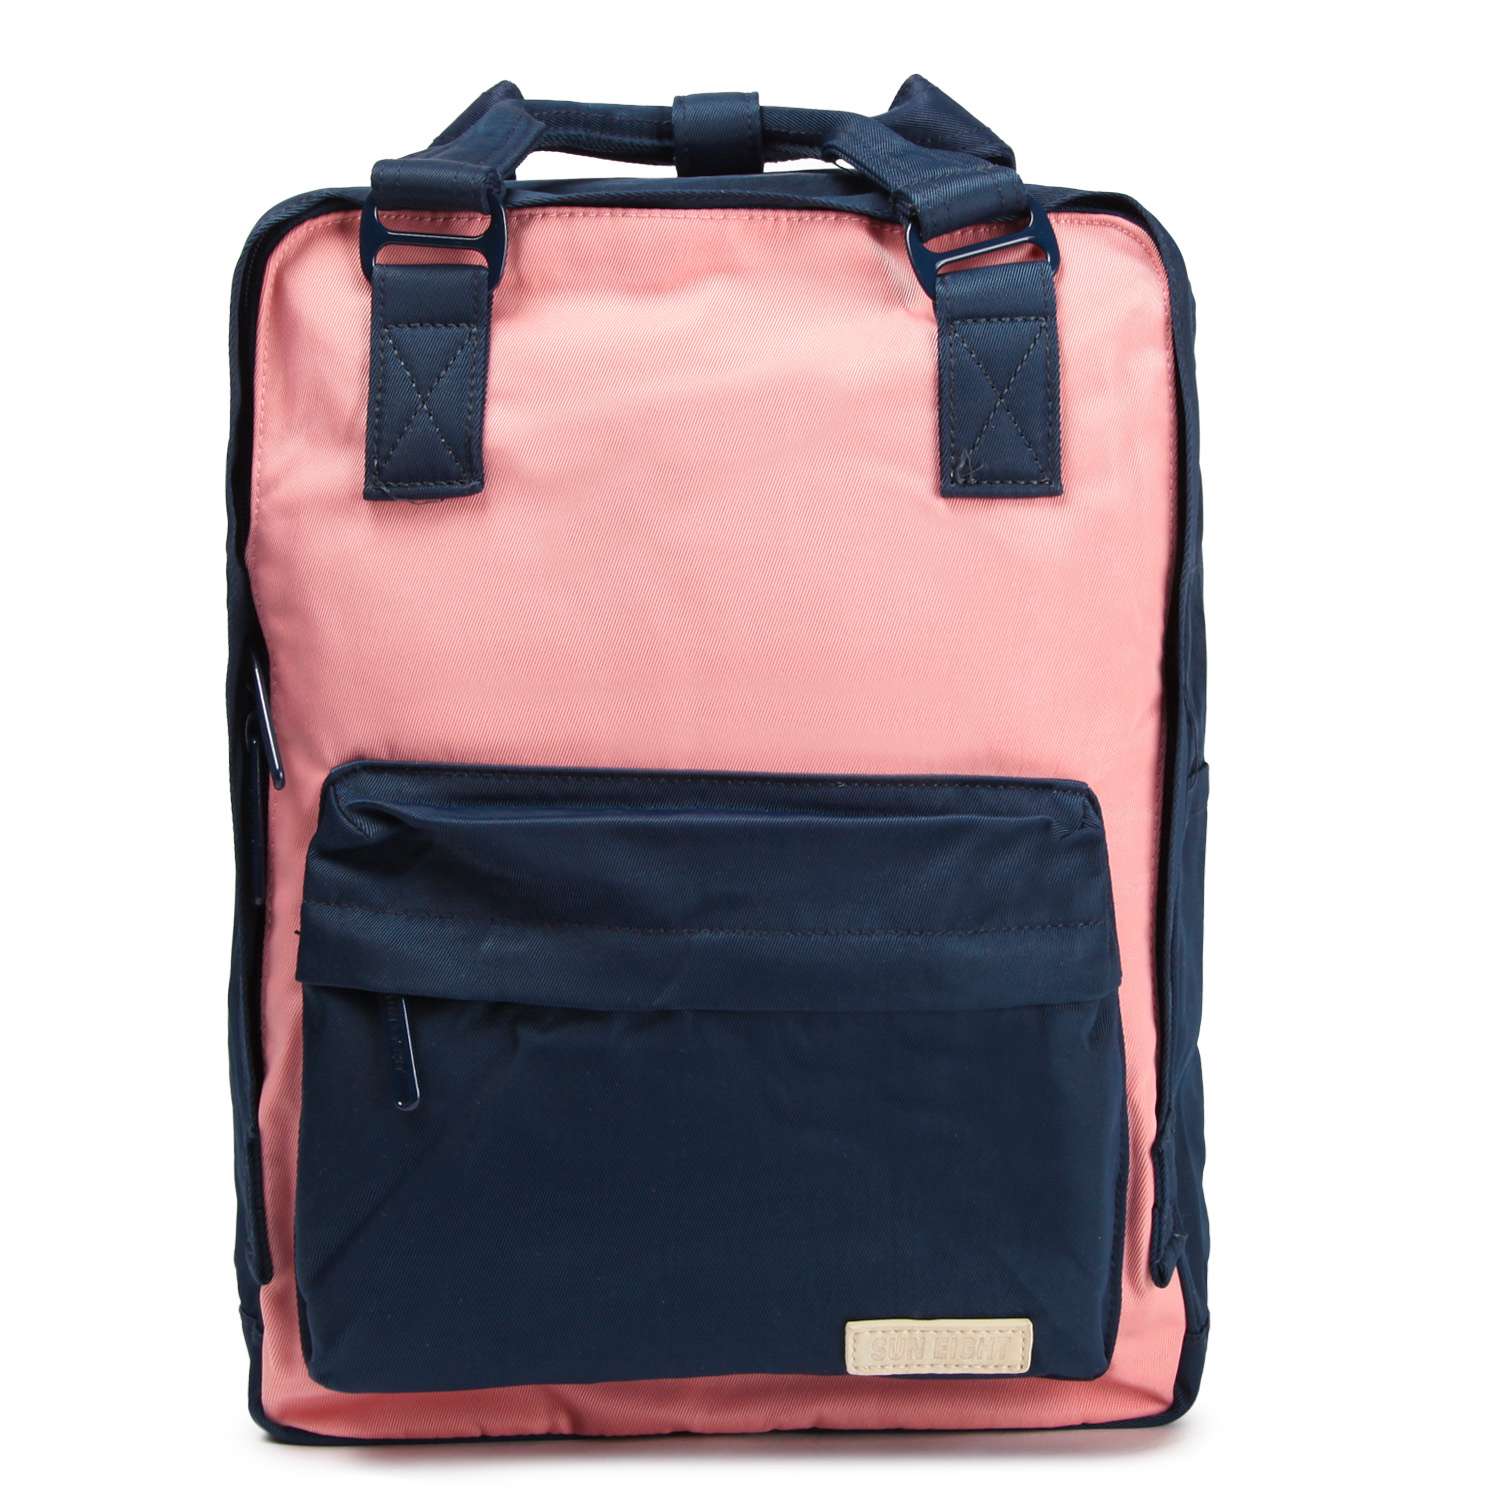 Рюкзак для девочки школьный Suneight SE8350 - фото 1